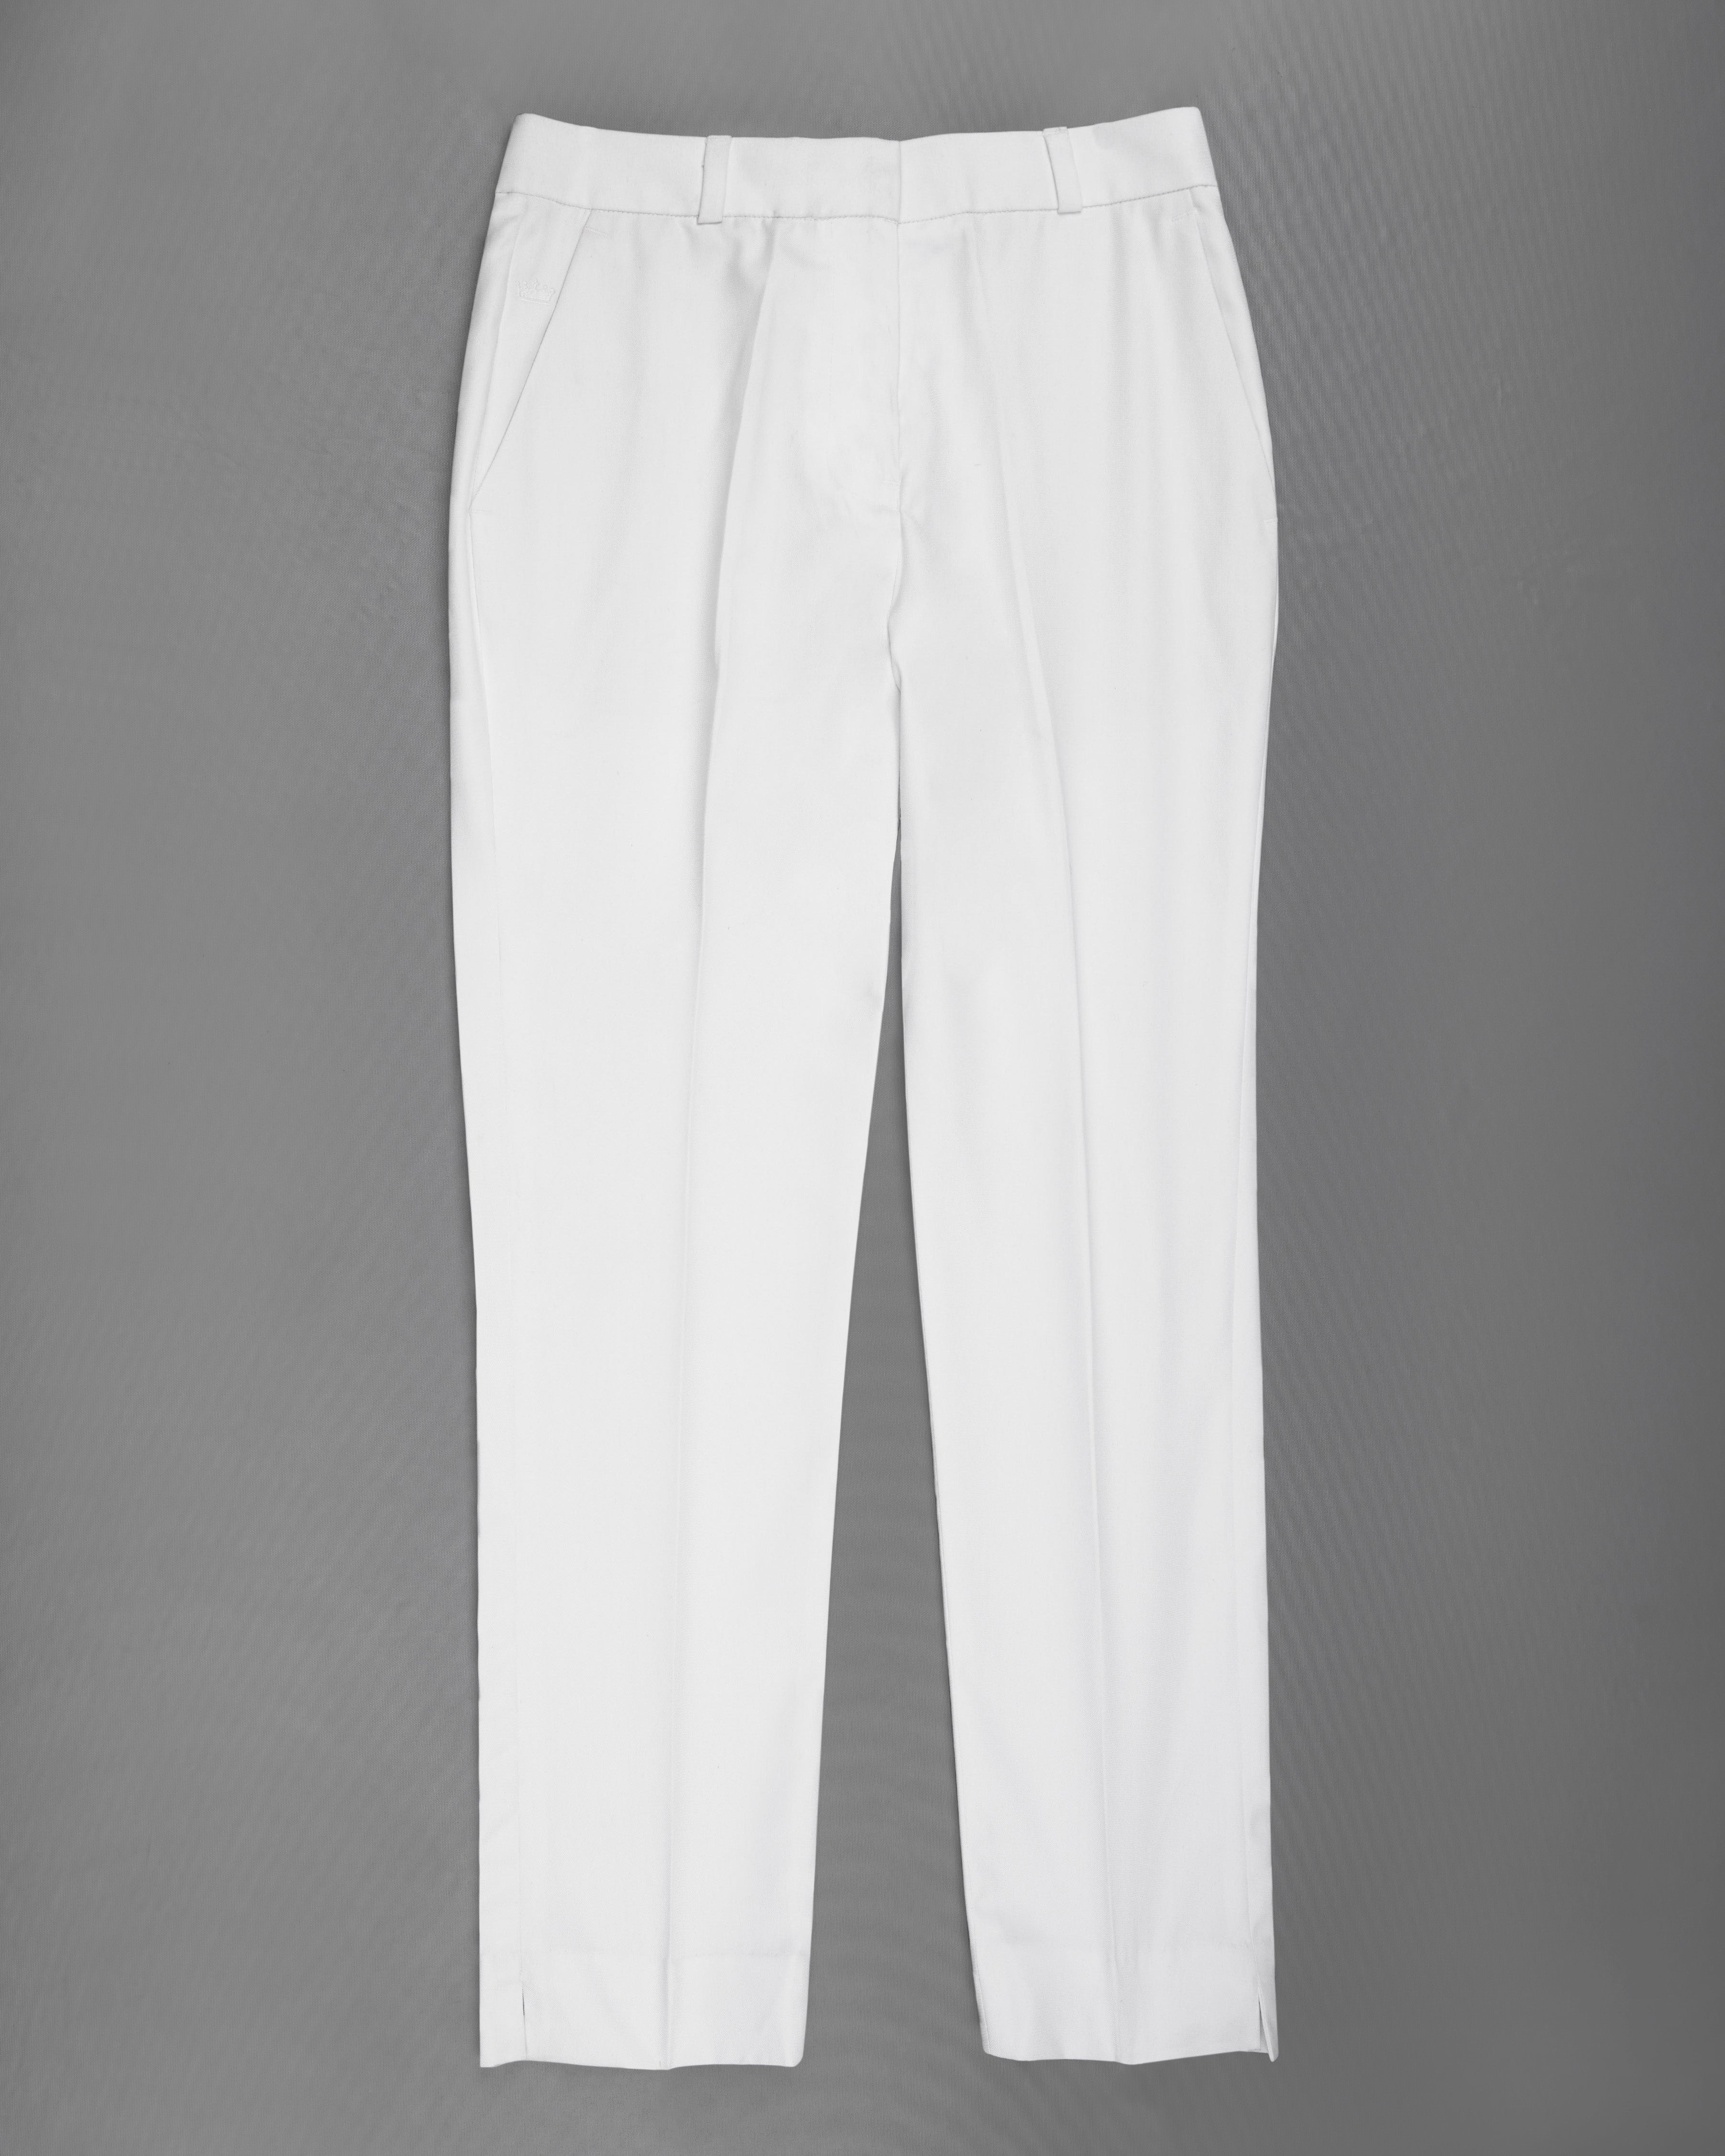 Bright White Subtle Sheen Women's Pant WOT004-24, WOT004-26, WOT004-28, WOT004-30, WOT004-32, WOT004-34